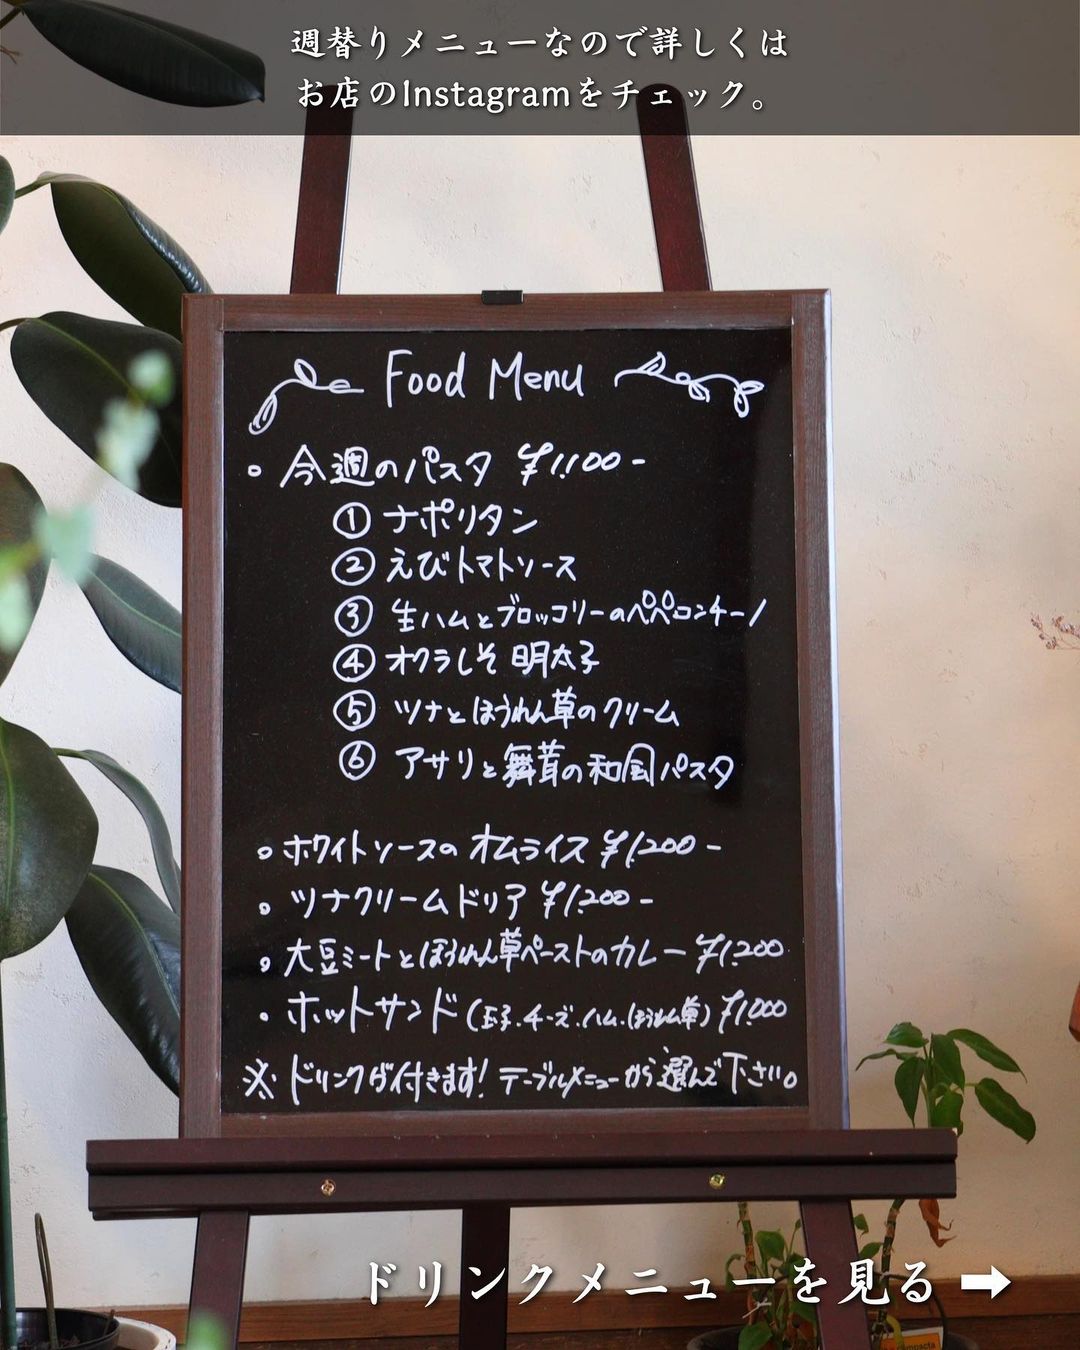 【弘前市・cafe hammock】週替わりメニュー